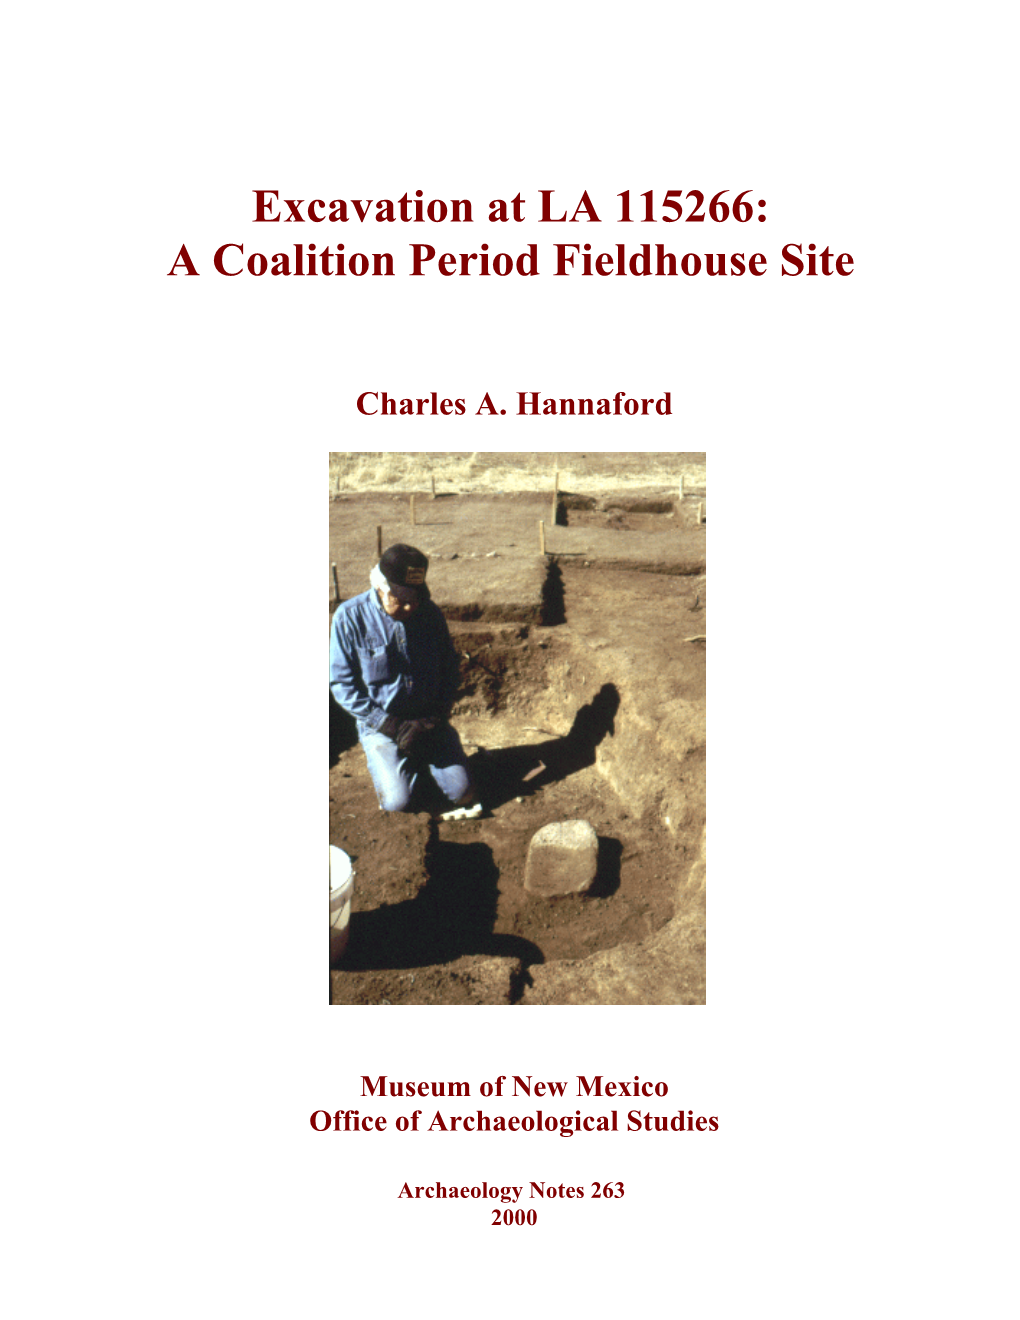 Excavation at LA 115266: a Coalition Period Fieldhouse Site